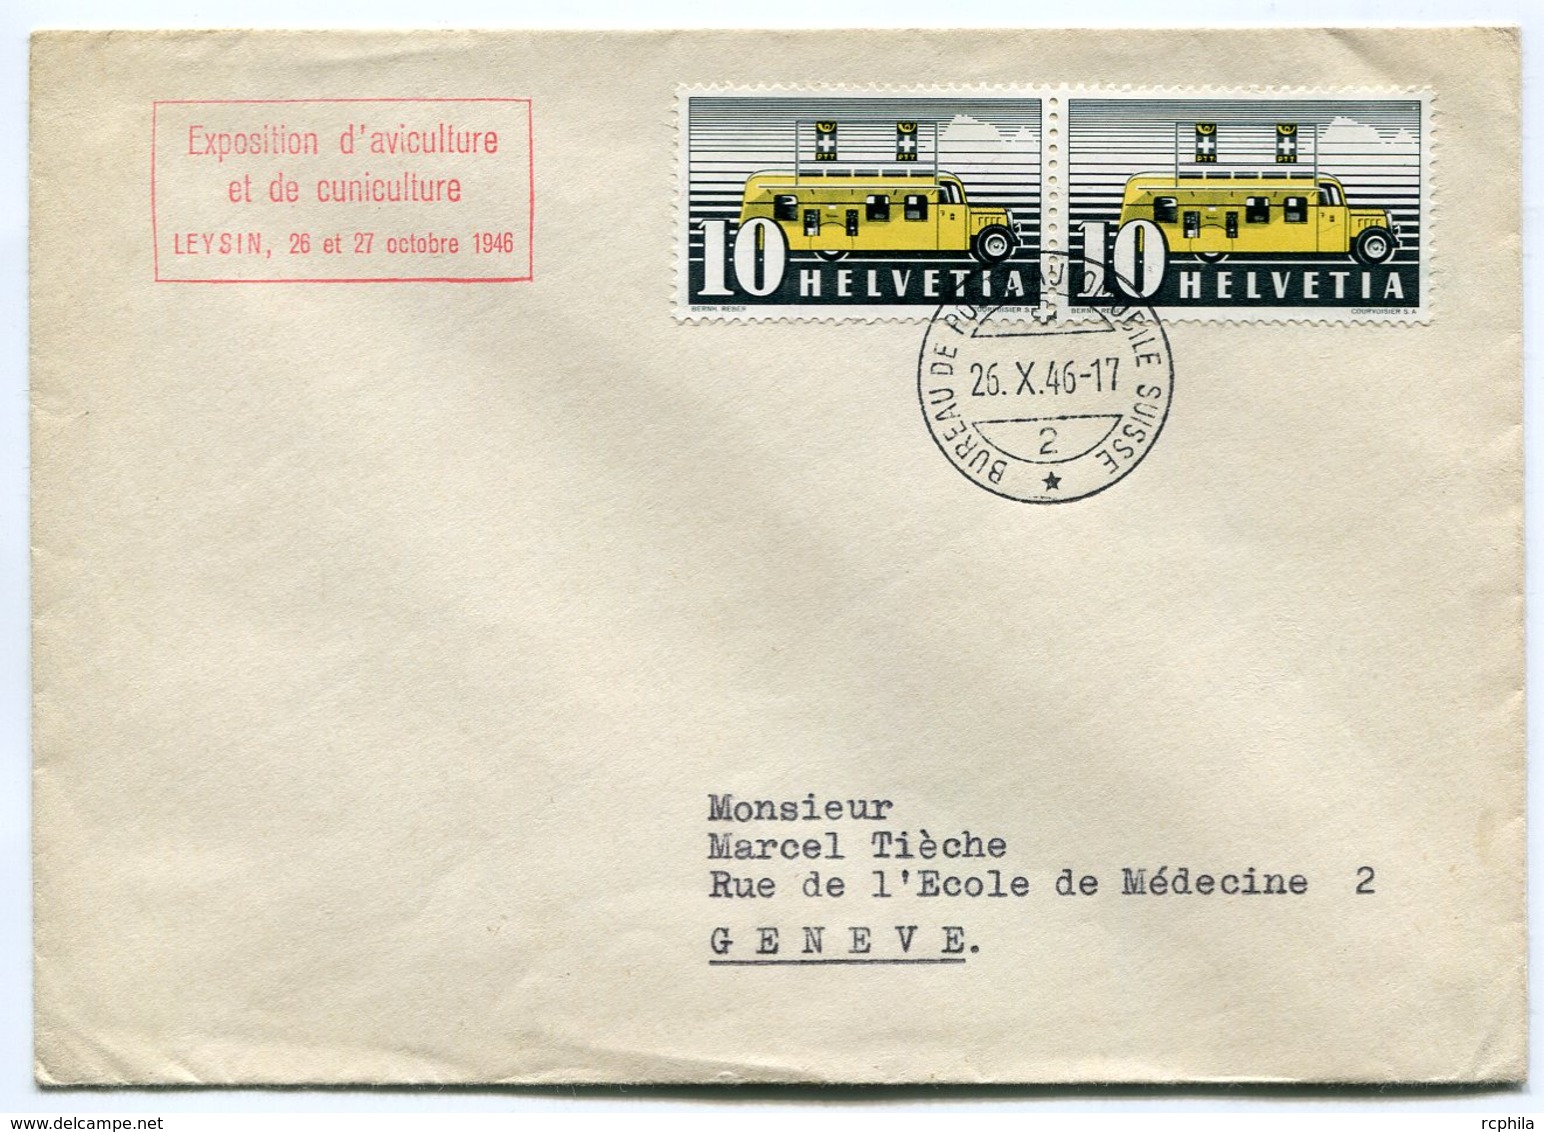 RC 10409 SUISSE 1946 LETTRE POSTE AUTOMOBILE + EXPOSITION D'AVICULTURE ET DE CUNICULTURE TB - Postmark Collection